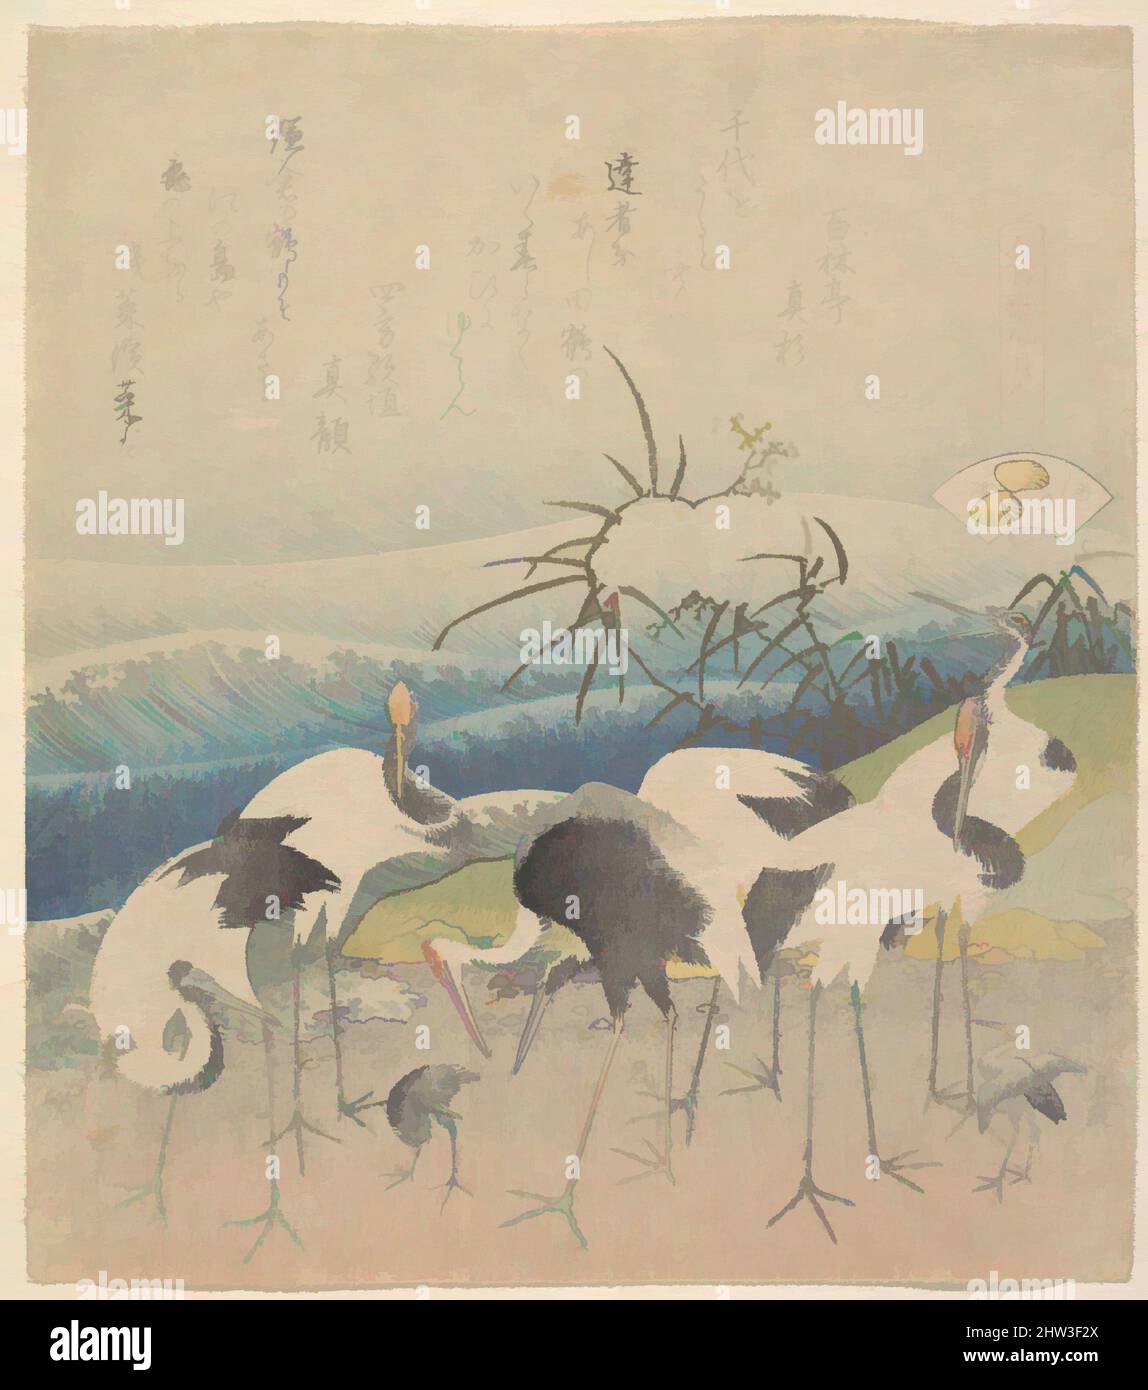 Kunst inspiriert von 元禄歌仙貝合, Ashi Clam, aus der Serie 'Genroku Kasen Kai-awase', Edo-Periode (1615–1868), 1821, Japan, Polychromer Holzschnitt; Tinte und Farbe auf Papier, 7 15/16 x 7 Zoll (20,2 x 17,8 cm), Drucke, Katsushika Hokusai (Japanisch, Tokio (Edo) 1760–1849 Tokio (Edo, Klassische Werke, die von Artotop mit einem Schuss Moderne modernisiert wurden. Formen, Farbe und Wert, auffällige visuelle Wirkung auf Kunst. Emotionen durch Freiheit von Kunstwerken auf zeitgemäße Weise. Eine zeitlose Botschaft, die eine wild kreative neue Richtung verfolgt. Künstler, die sich dem digitalen Medium zuwenden und die Artotop NFT erschaffen Stockfoto